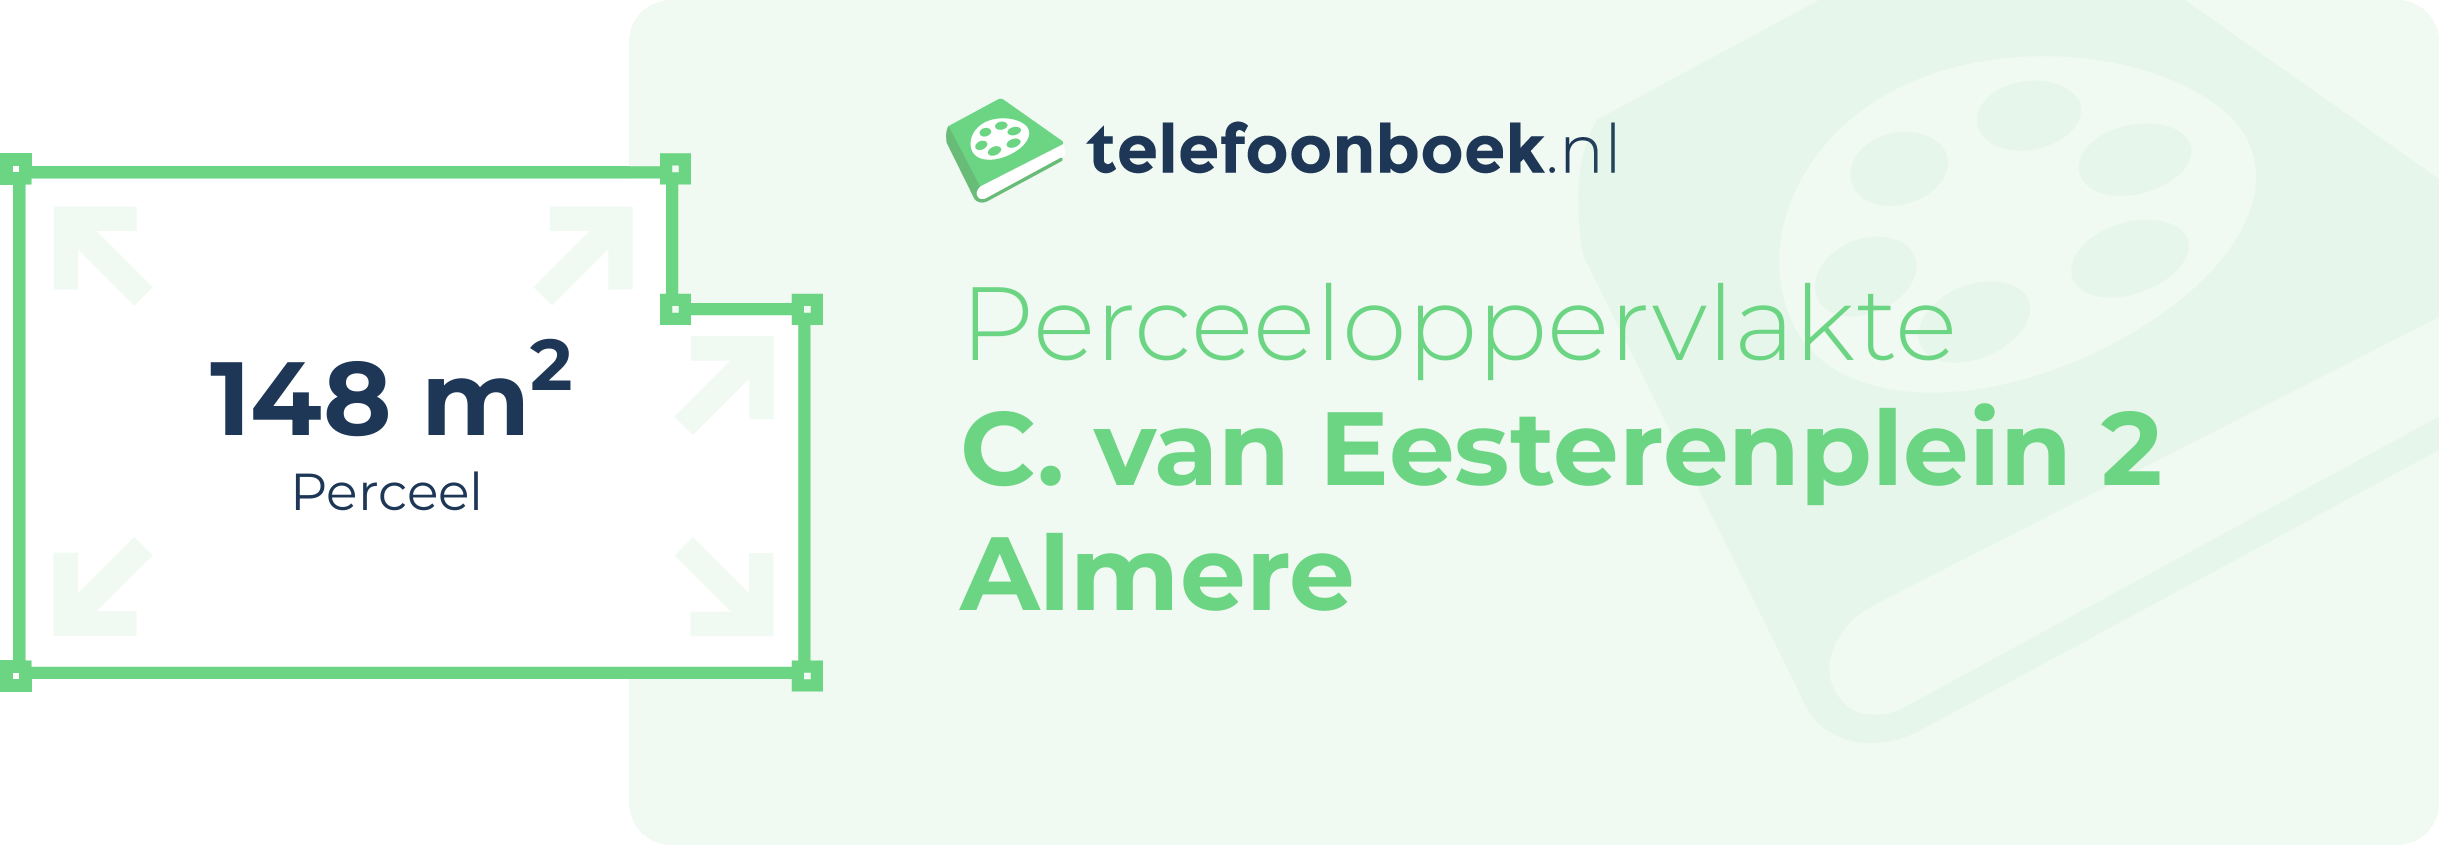 Perceeloppervlakte C. Van Eesterenplein 2 Almere